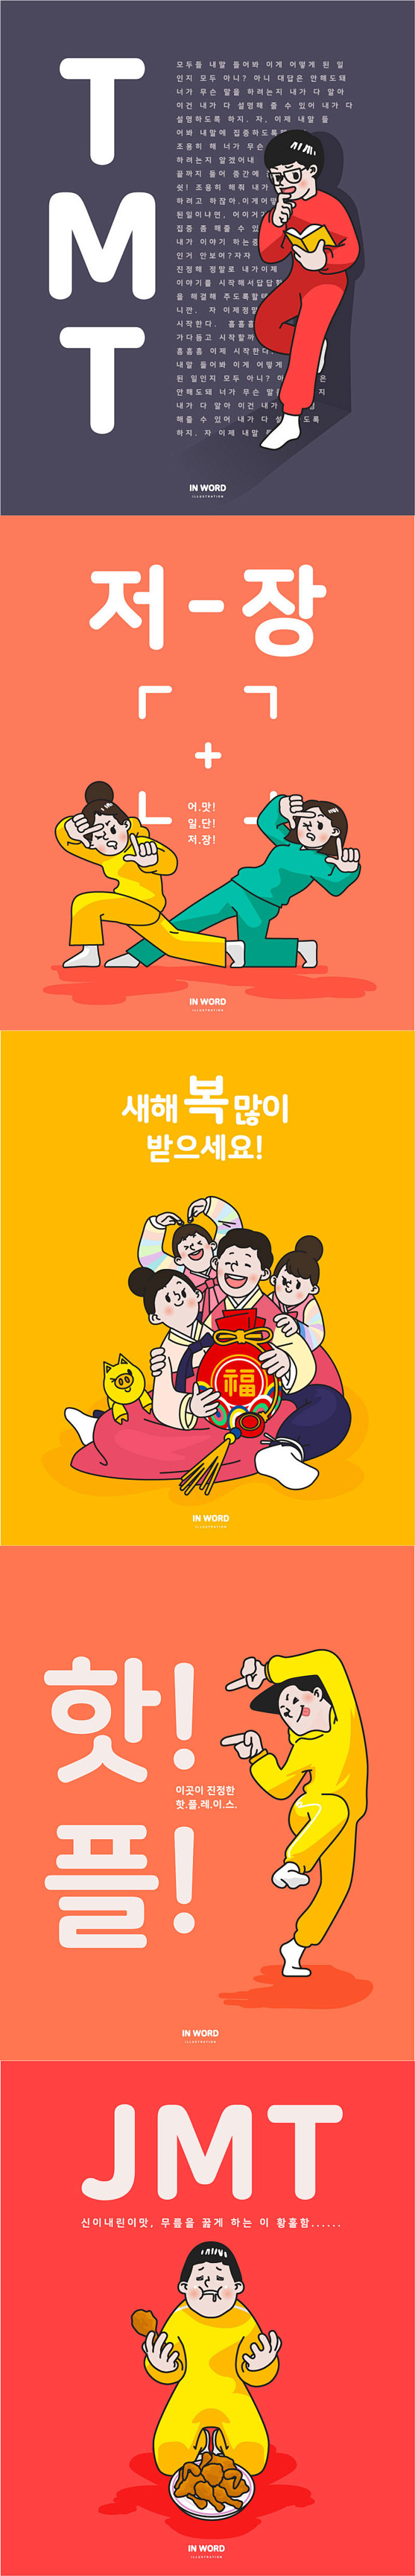 62807韩国风可爱夸张卡通人物购物娱乐...